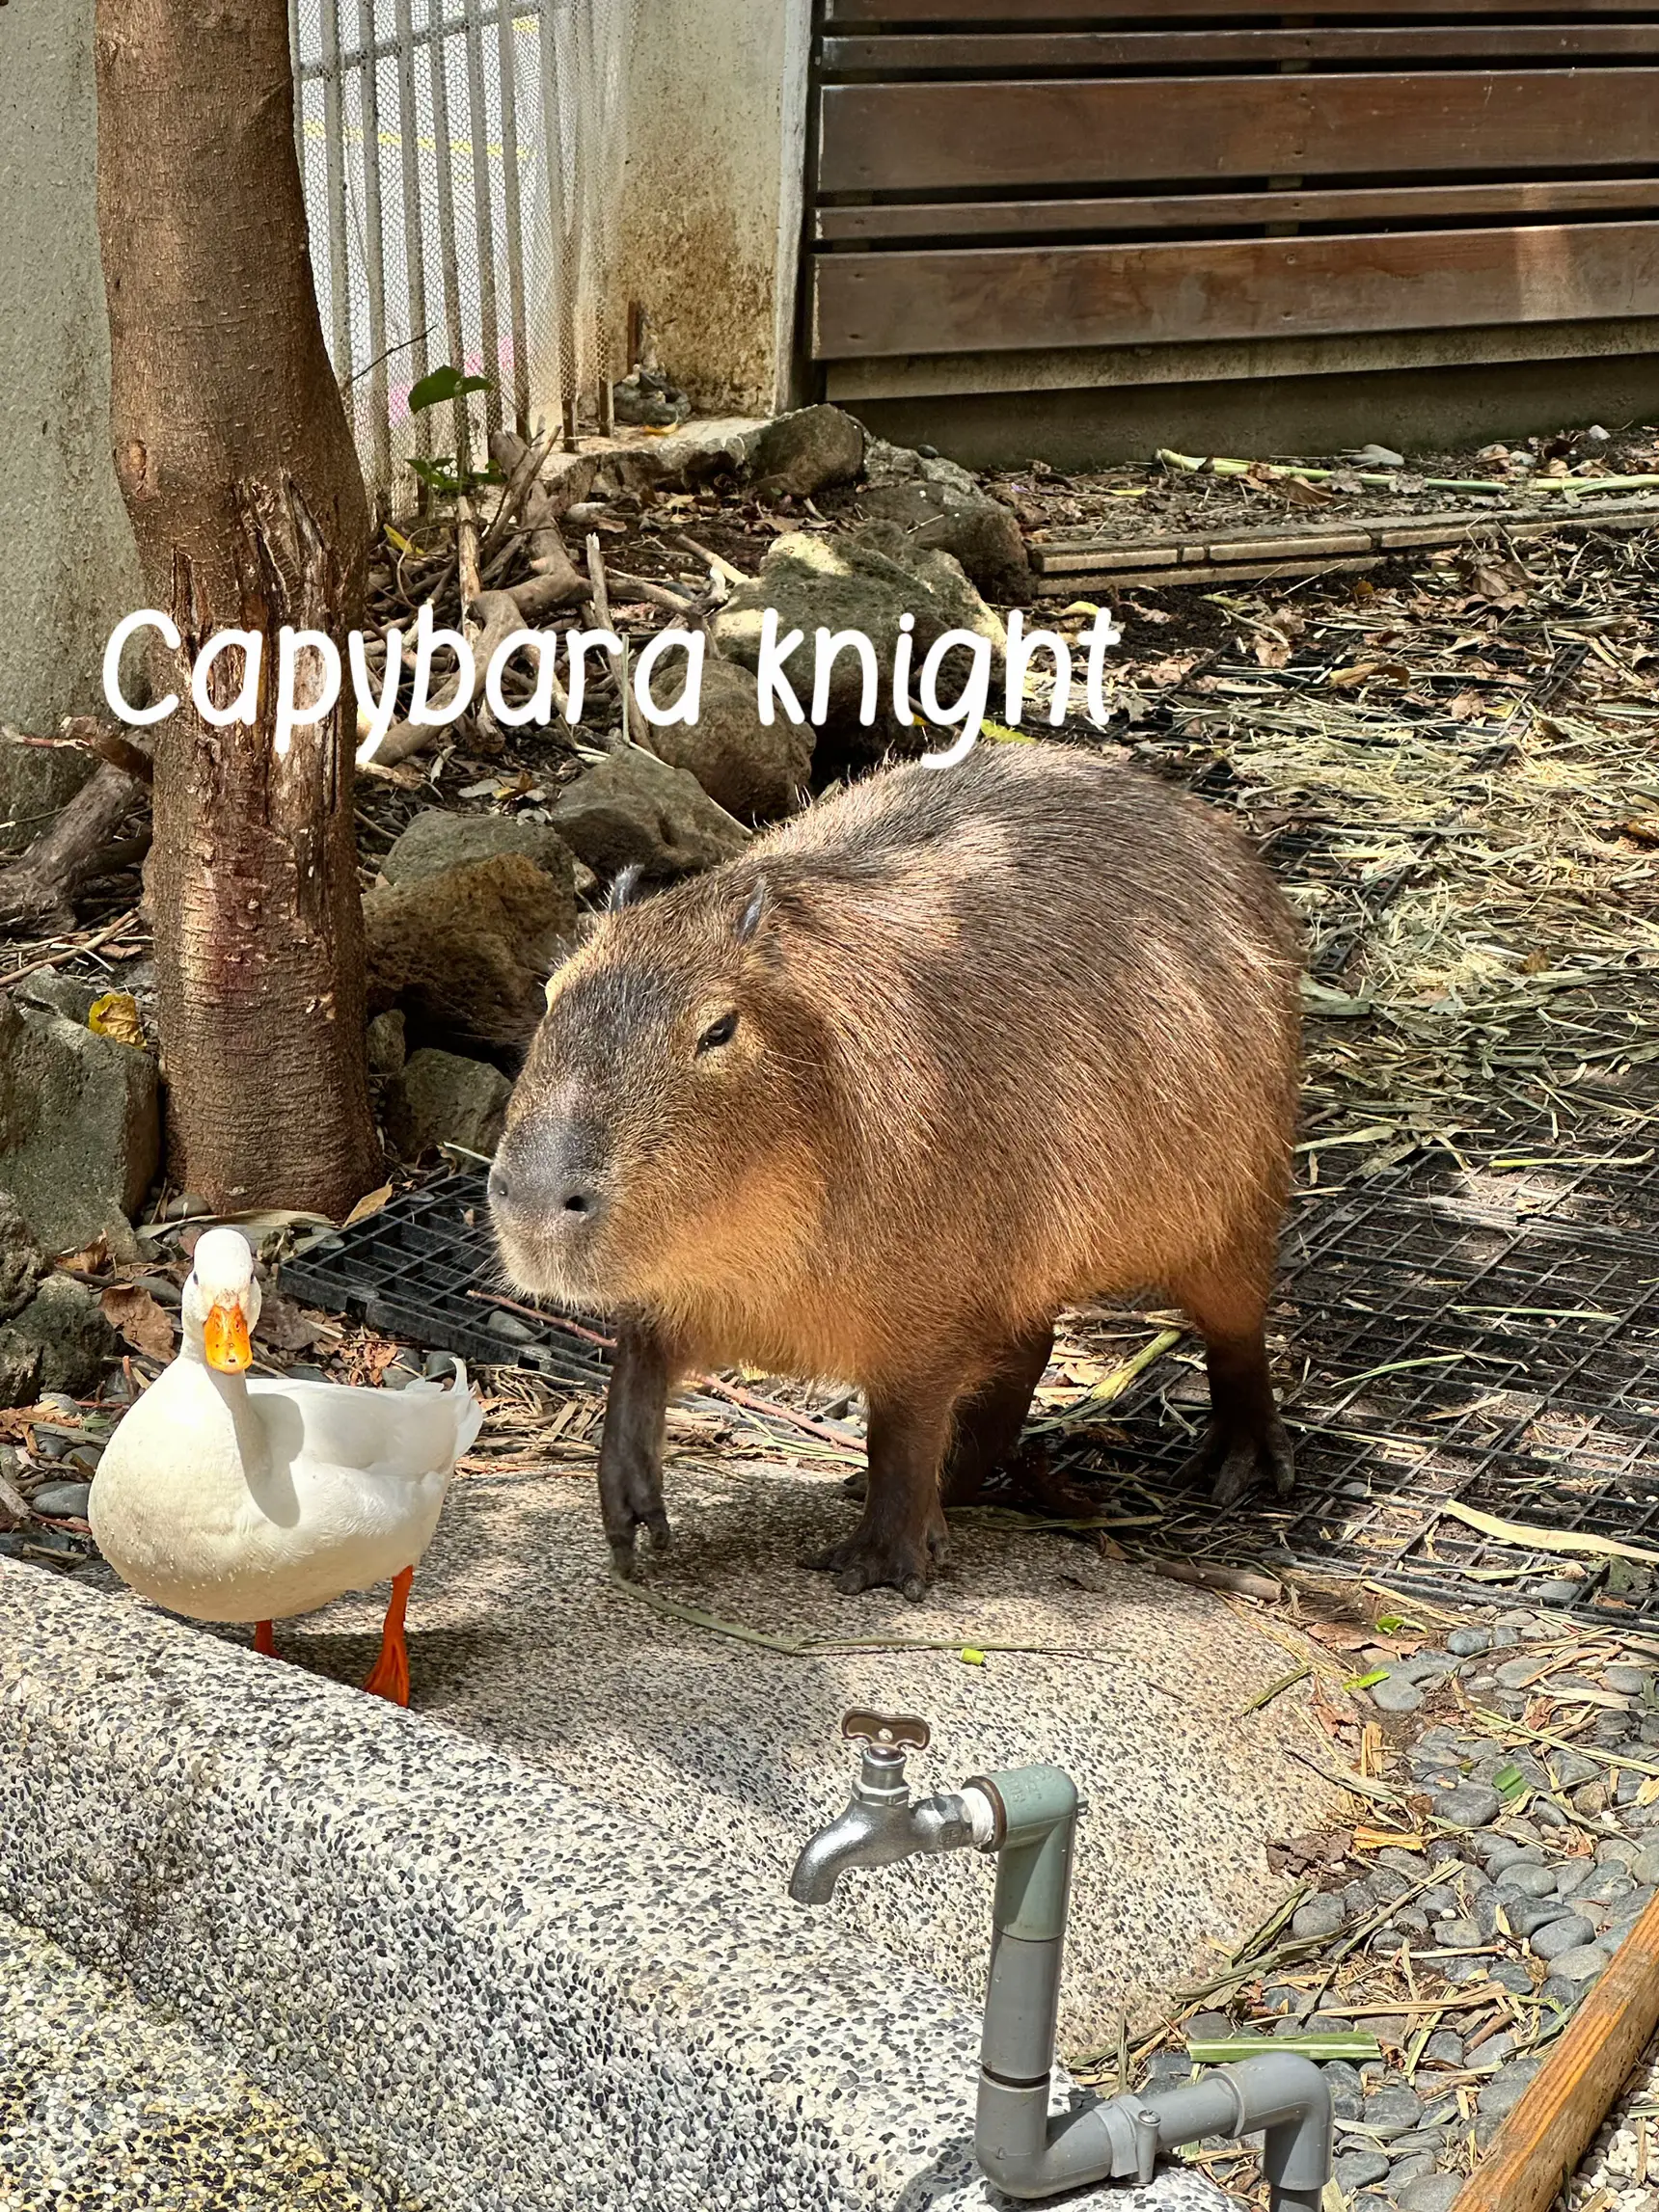 capybara #illustration #art #animals